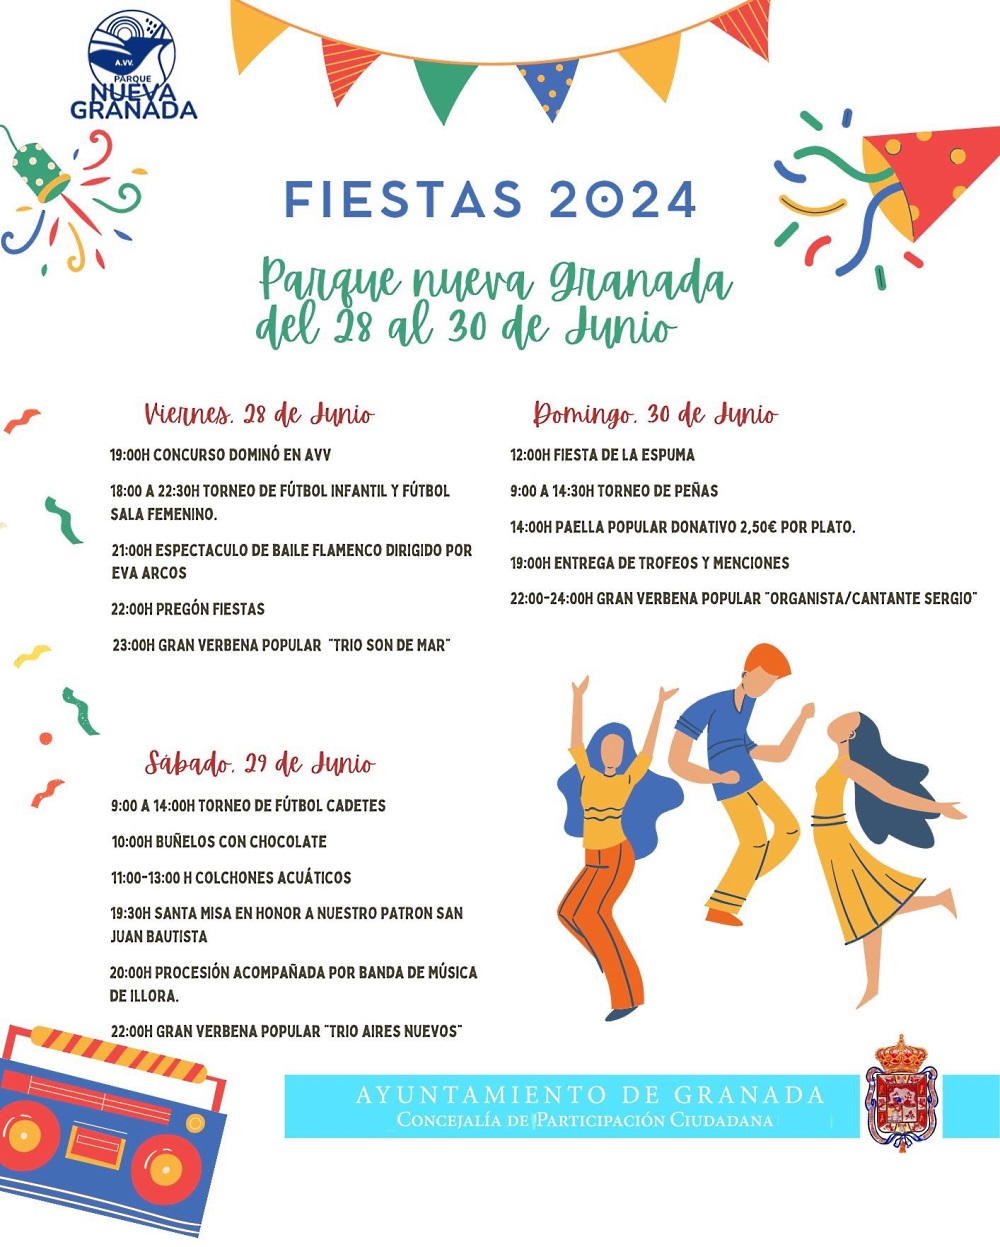 Fiestas 2024 Parque Nueva Granada